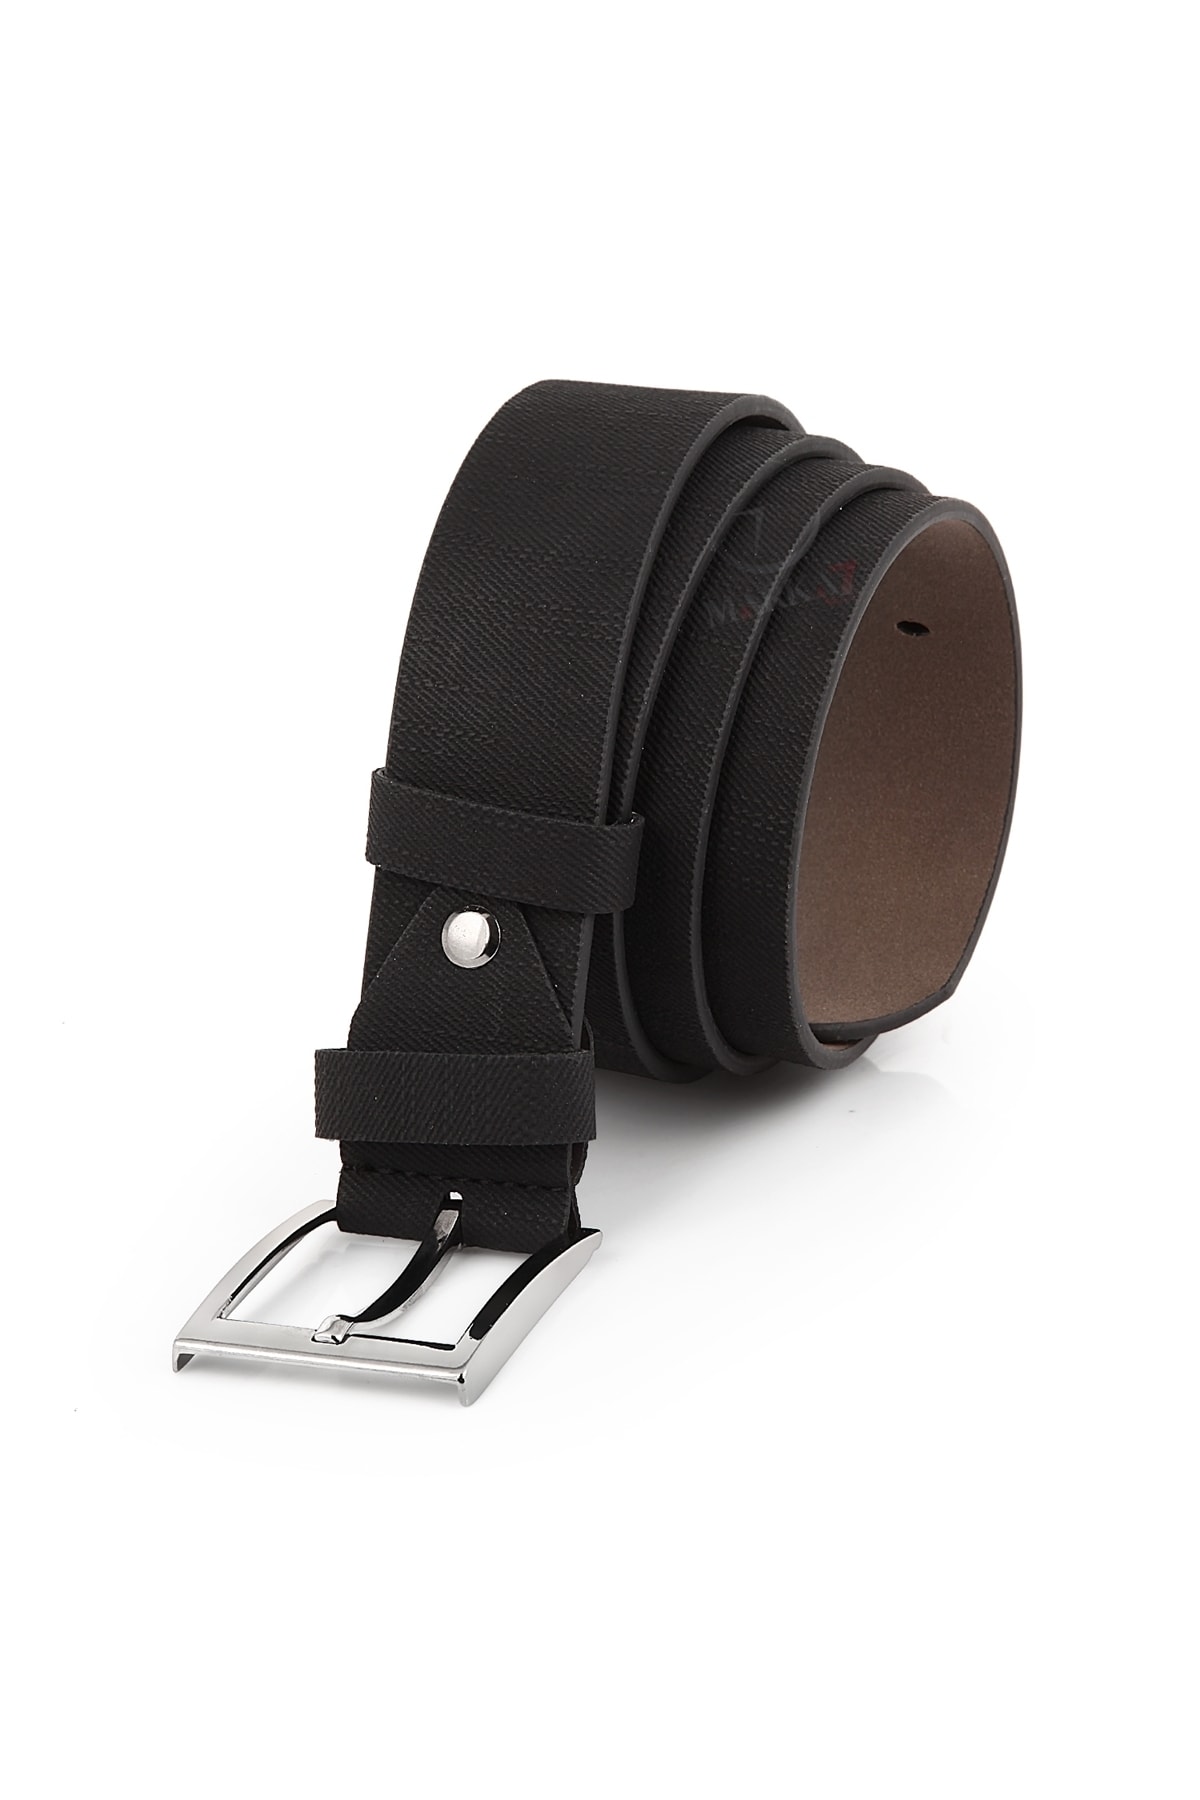 Polo Air Men's Denim Patterned Leather Belt Black Color